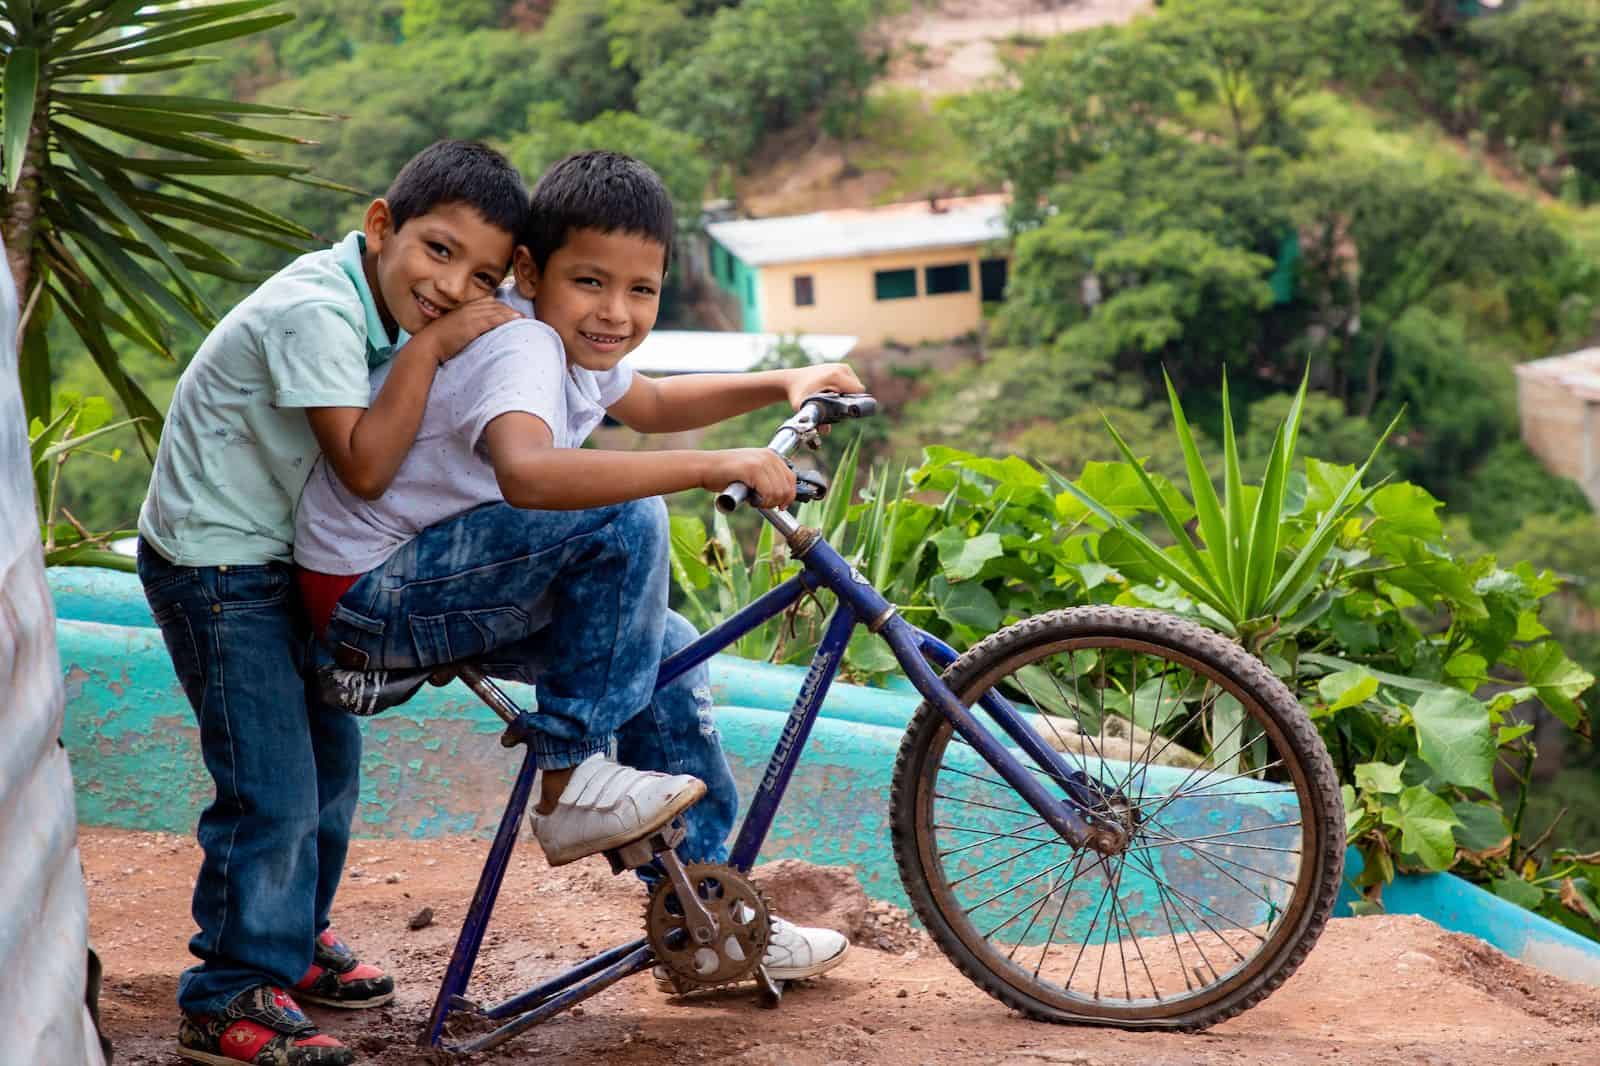 A boy sits on a bike with a boy behind him, hugging him.